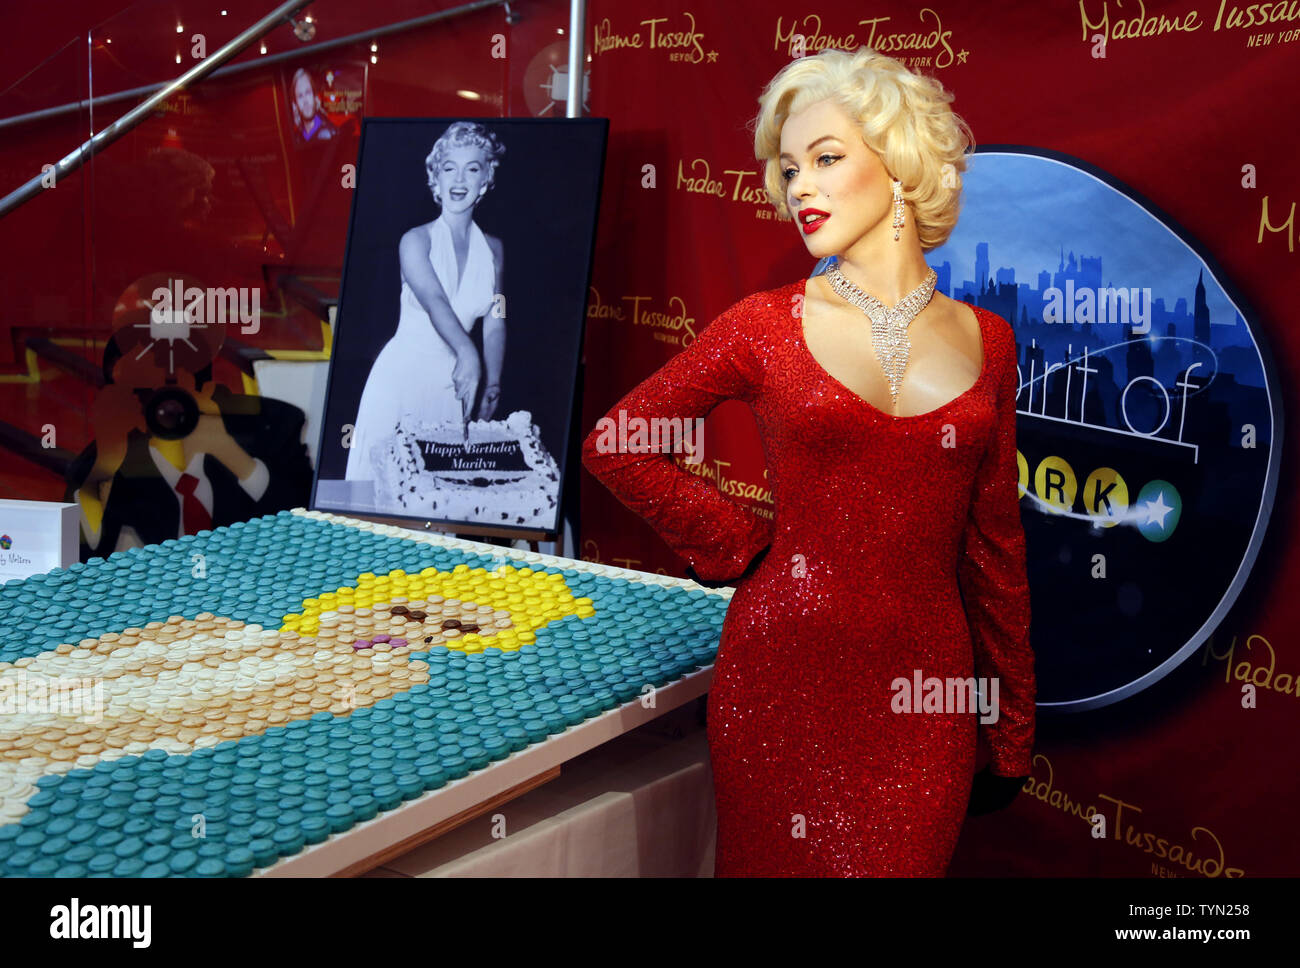 100+] Marilyn Monroe Wallpapers